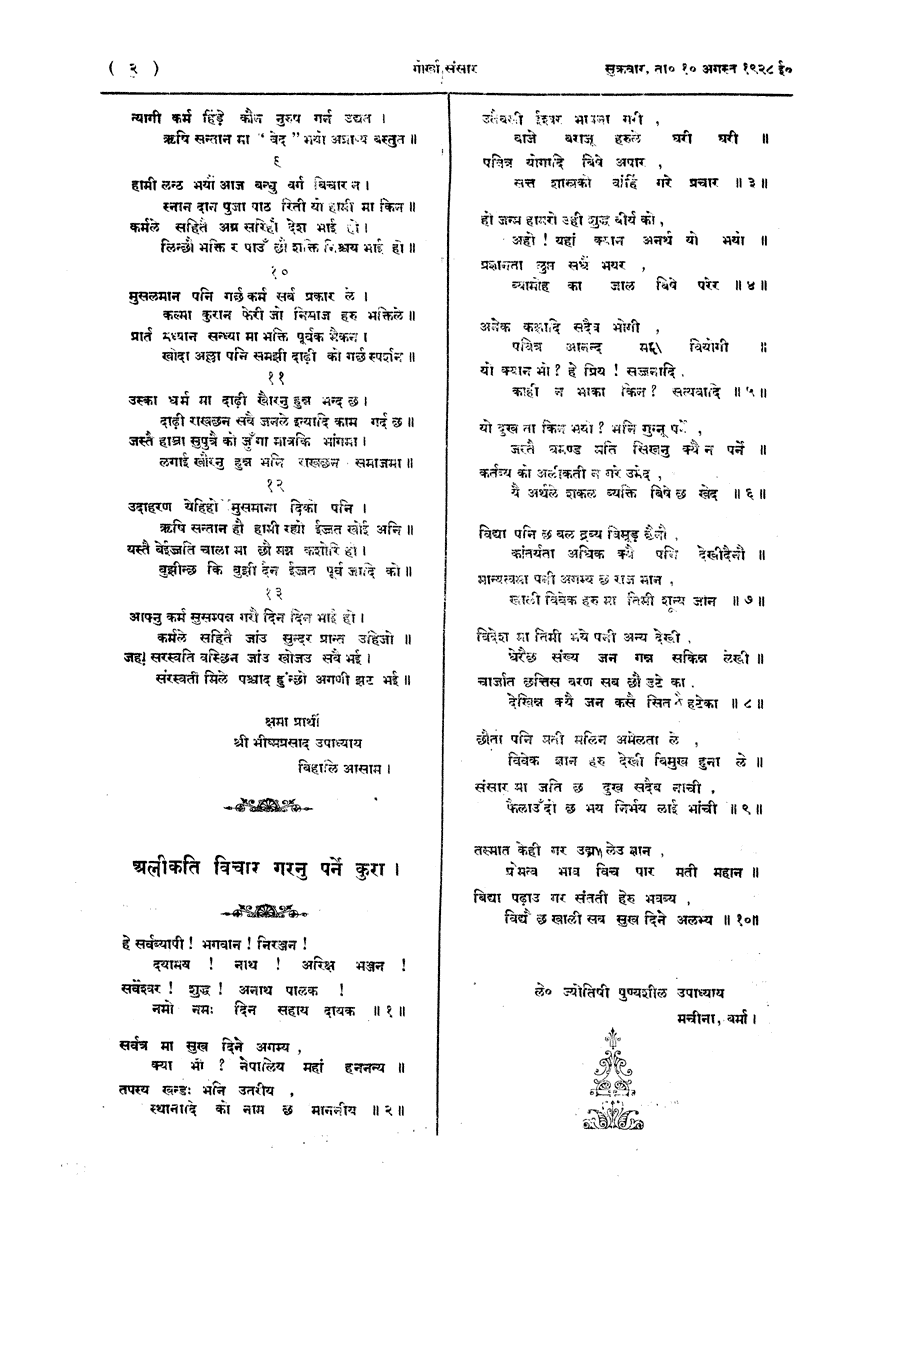 Gorkha Sansar, 10 Aug 1928, page 2